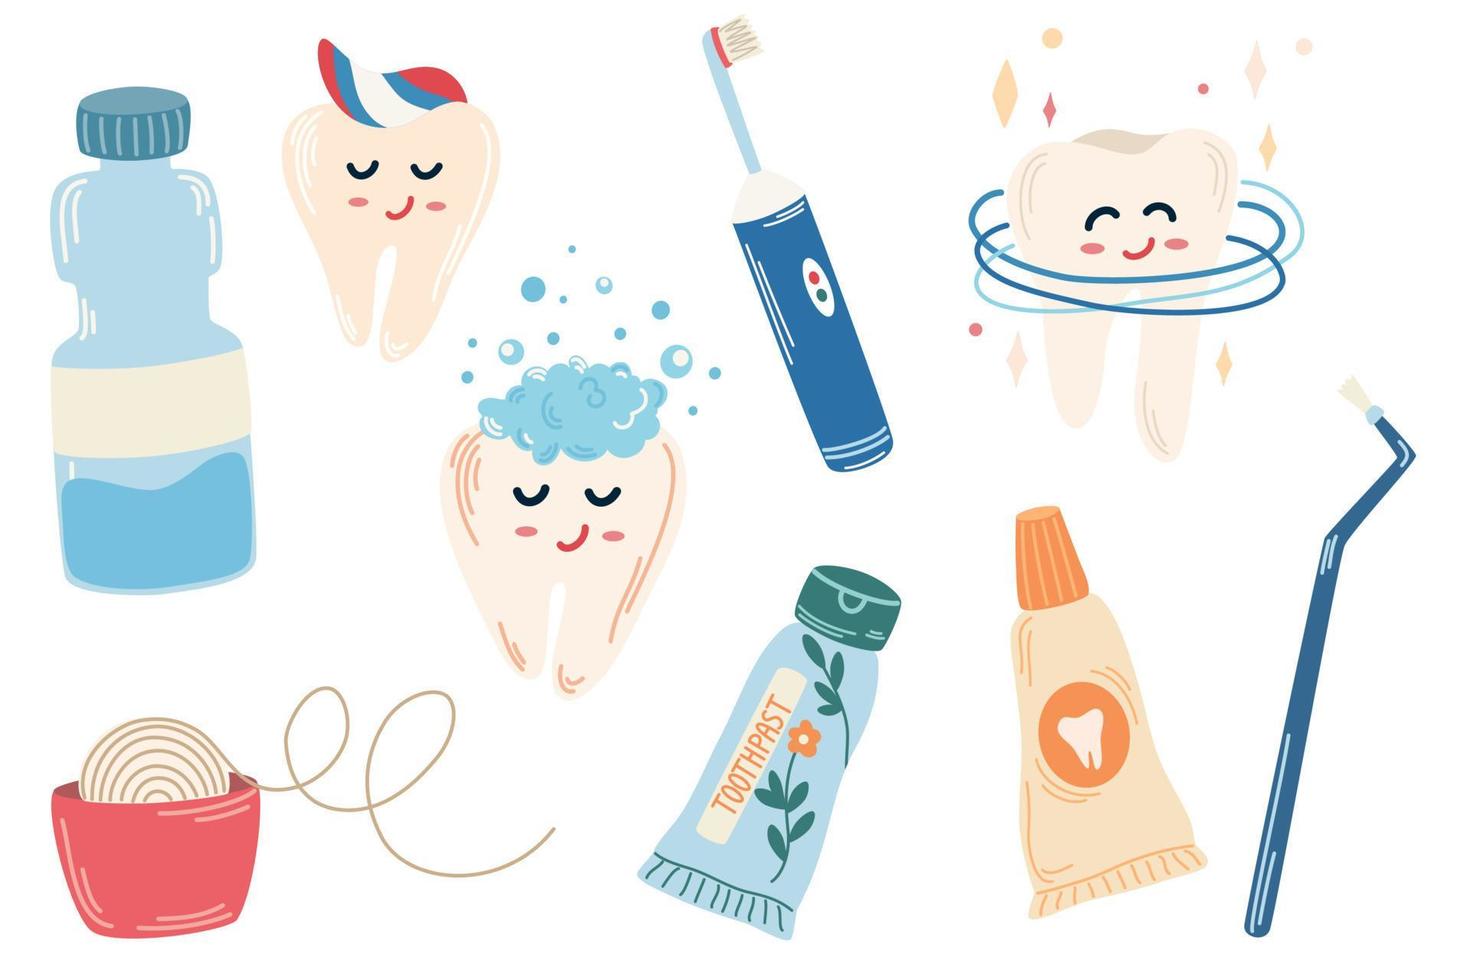 dentes de limpeza. conjunto de limpeza de dentes, pasta de dente, escova, fio dental, dentes felizes. conceito abstrato de cuidados dentários e bucais. ilustração vetorial plana contemporânea dos desenhos animados vetor